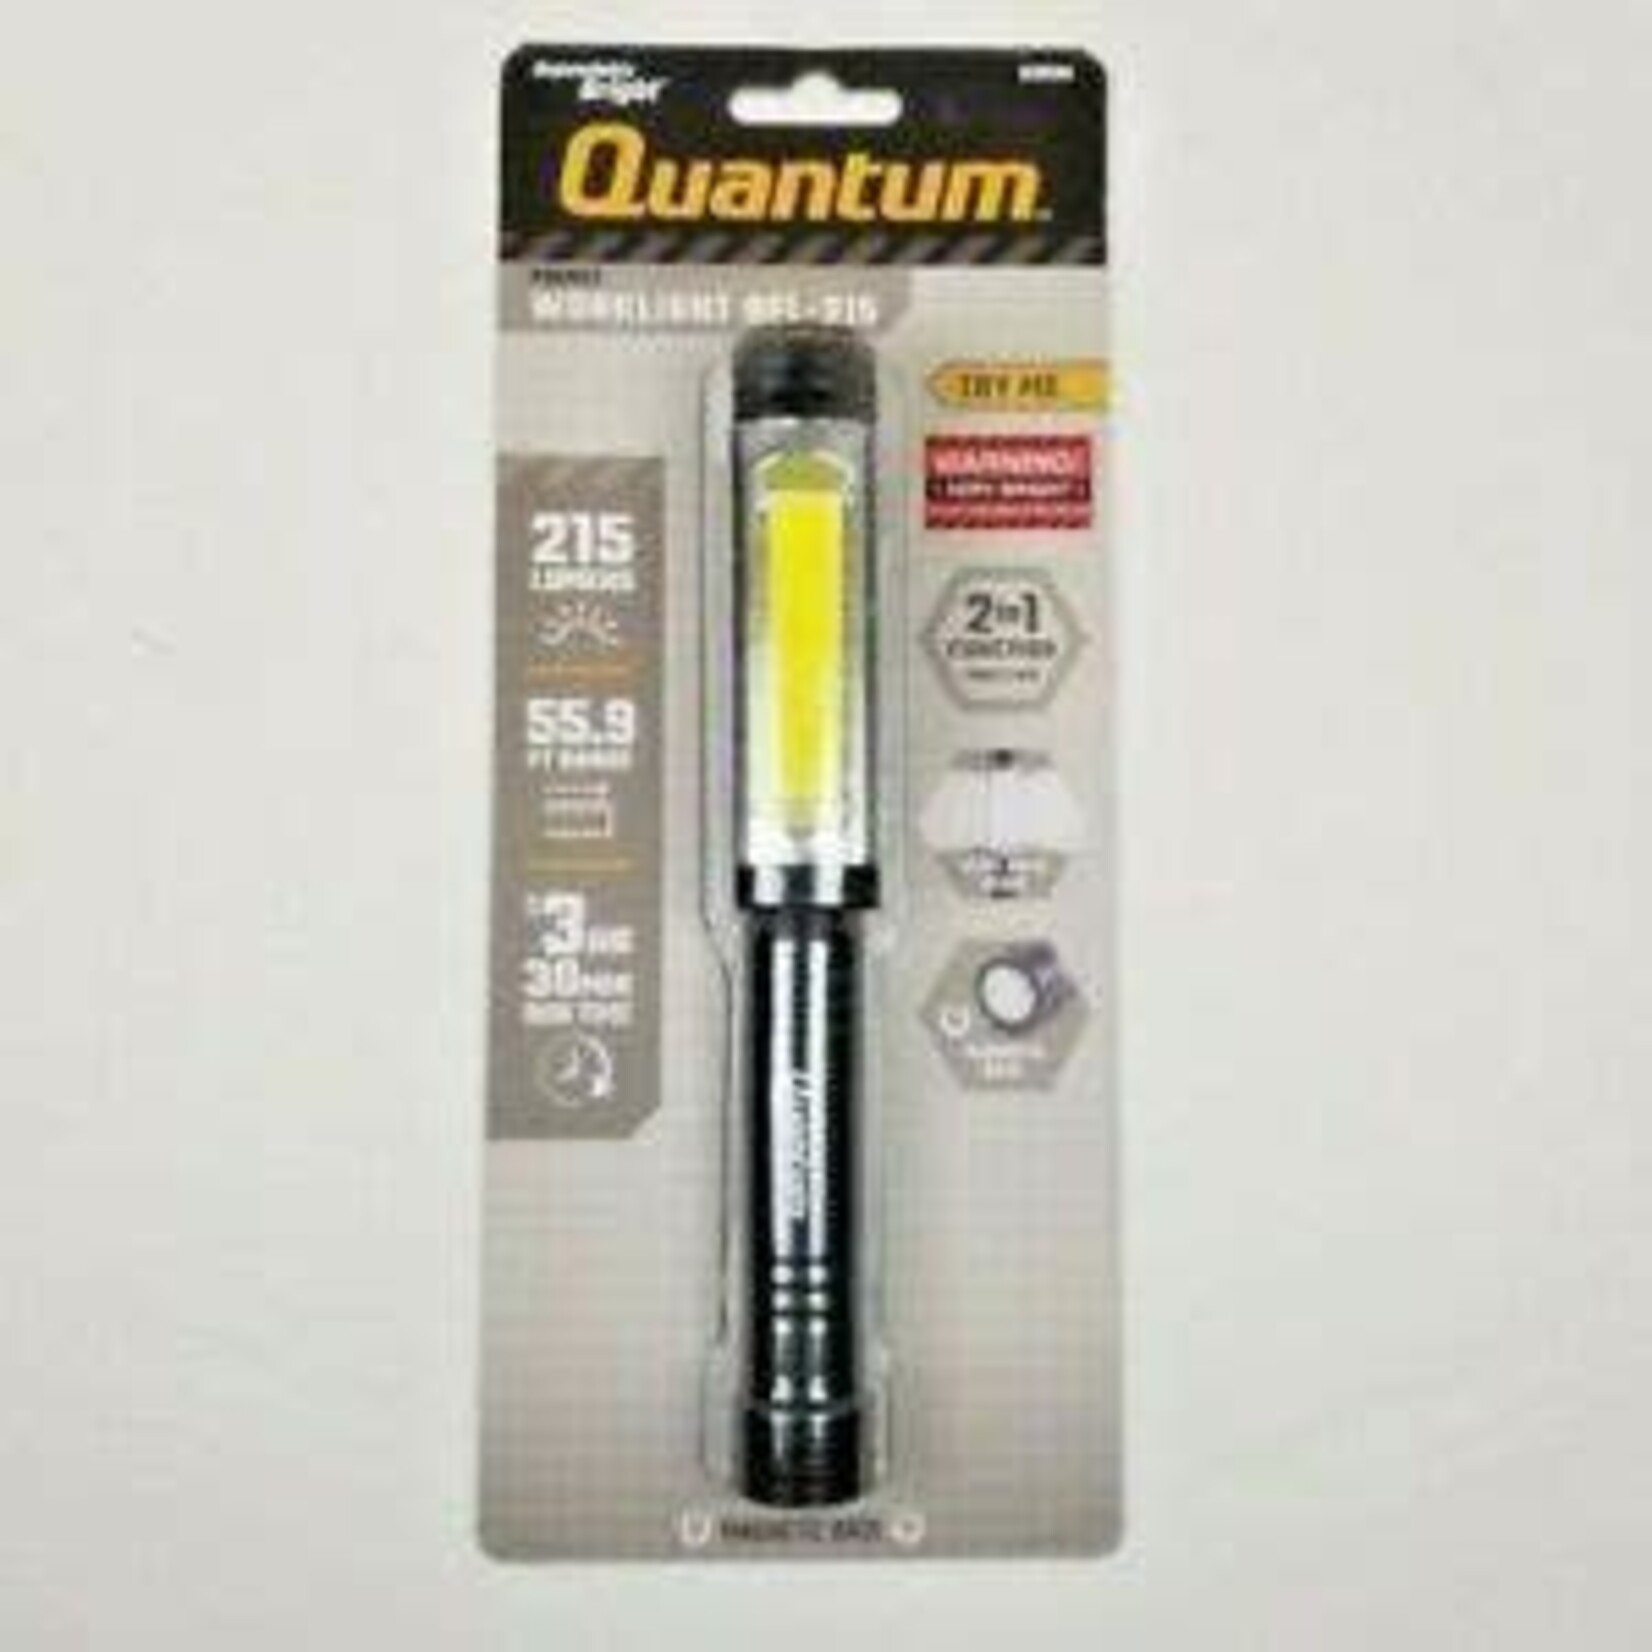 Quantum Quantum Pocket Worklight